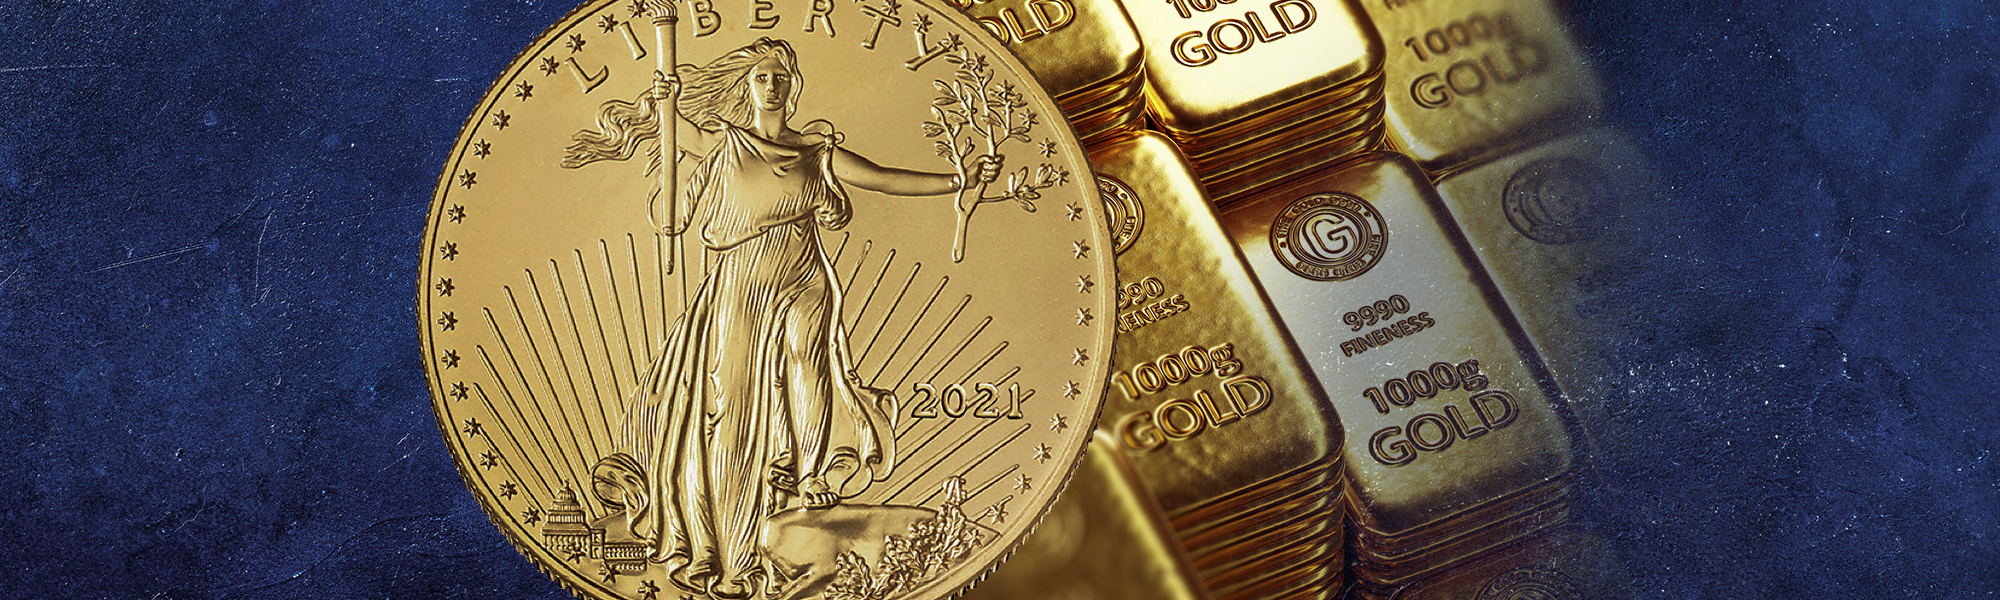 Should I Buy Gold Coins or a Gold Bar? - Blog